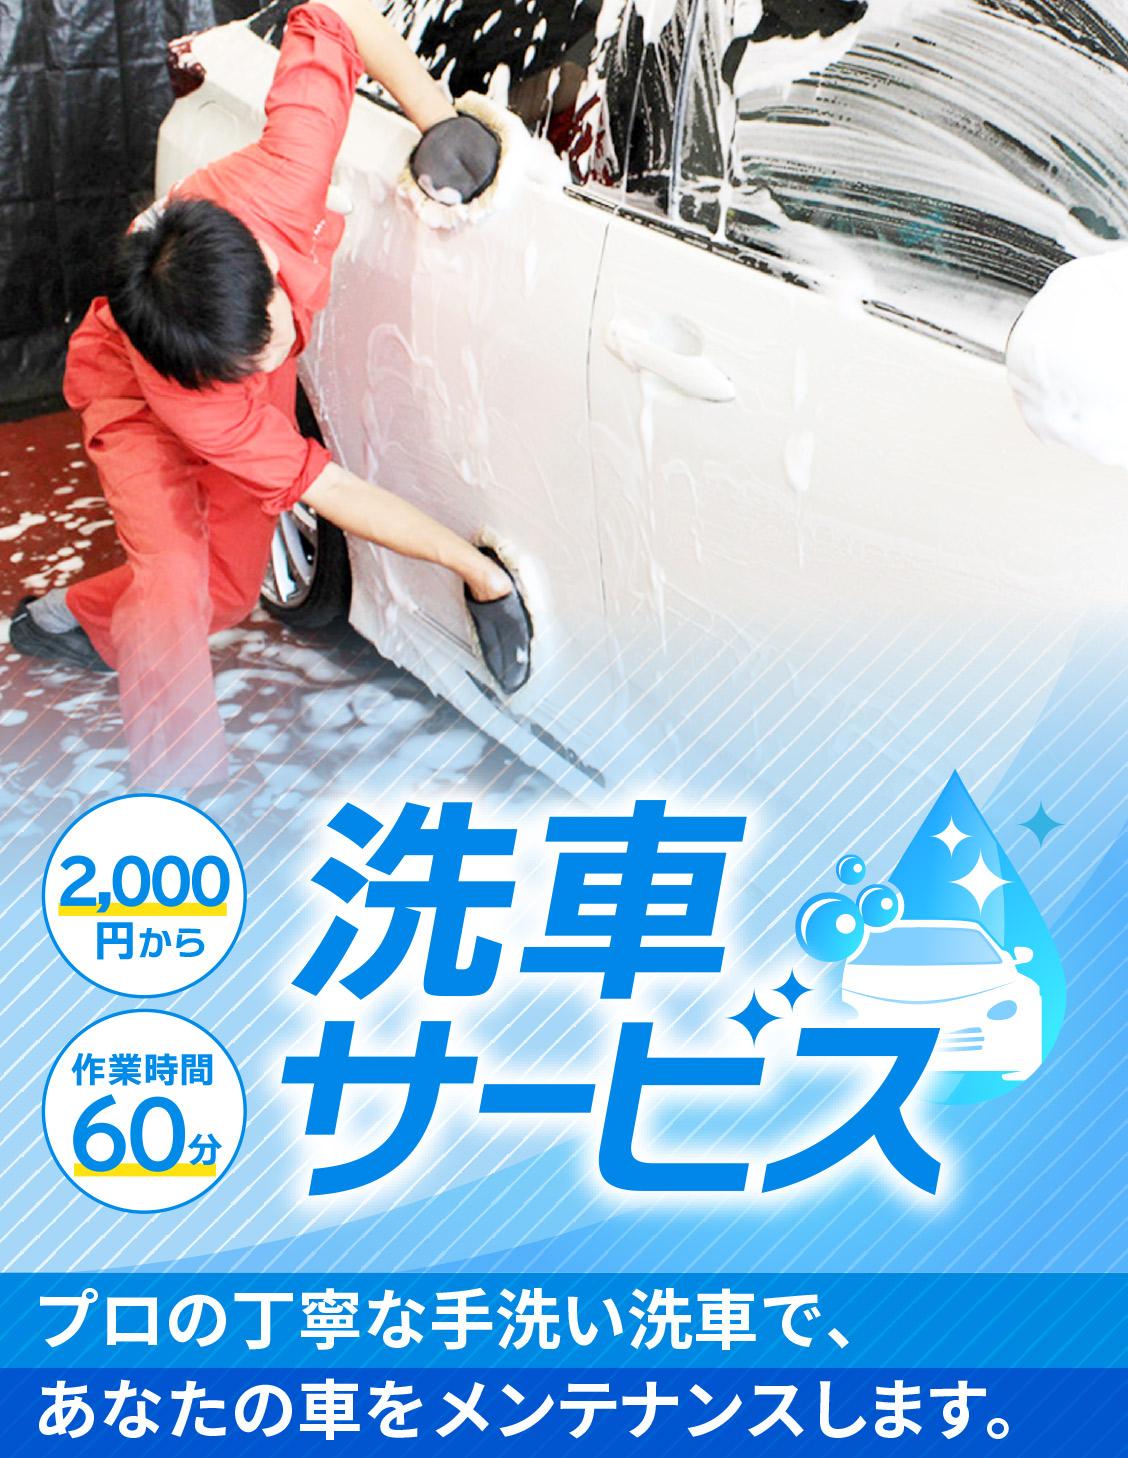 洗車サービス 作業時間60分 2,000円から